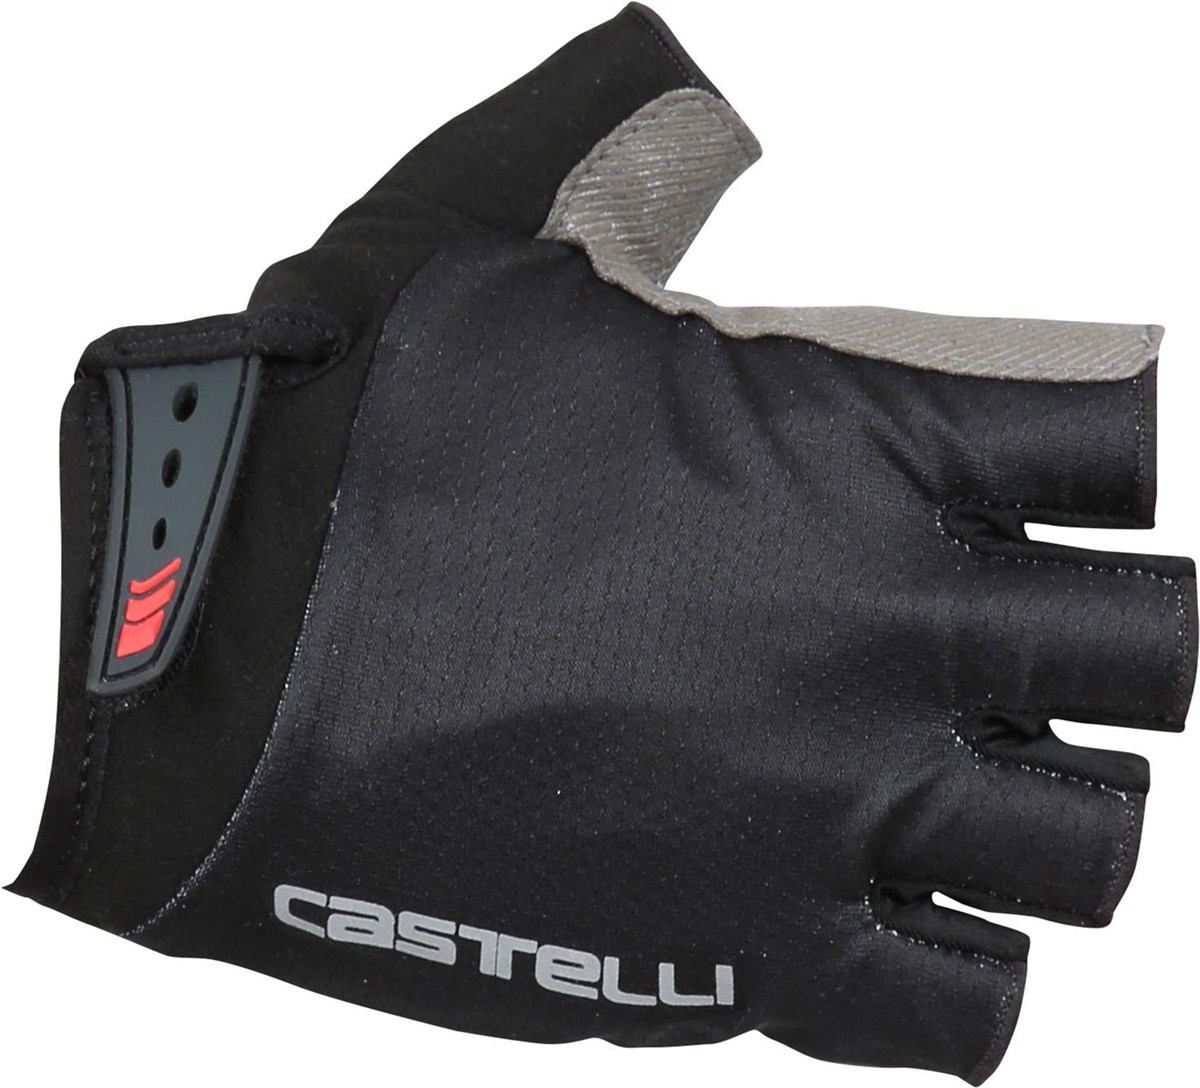 Castelli Entrata Kids Short Finger Gloves product image